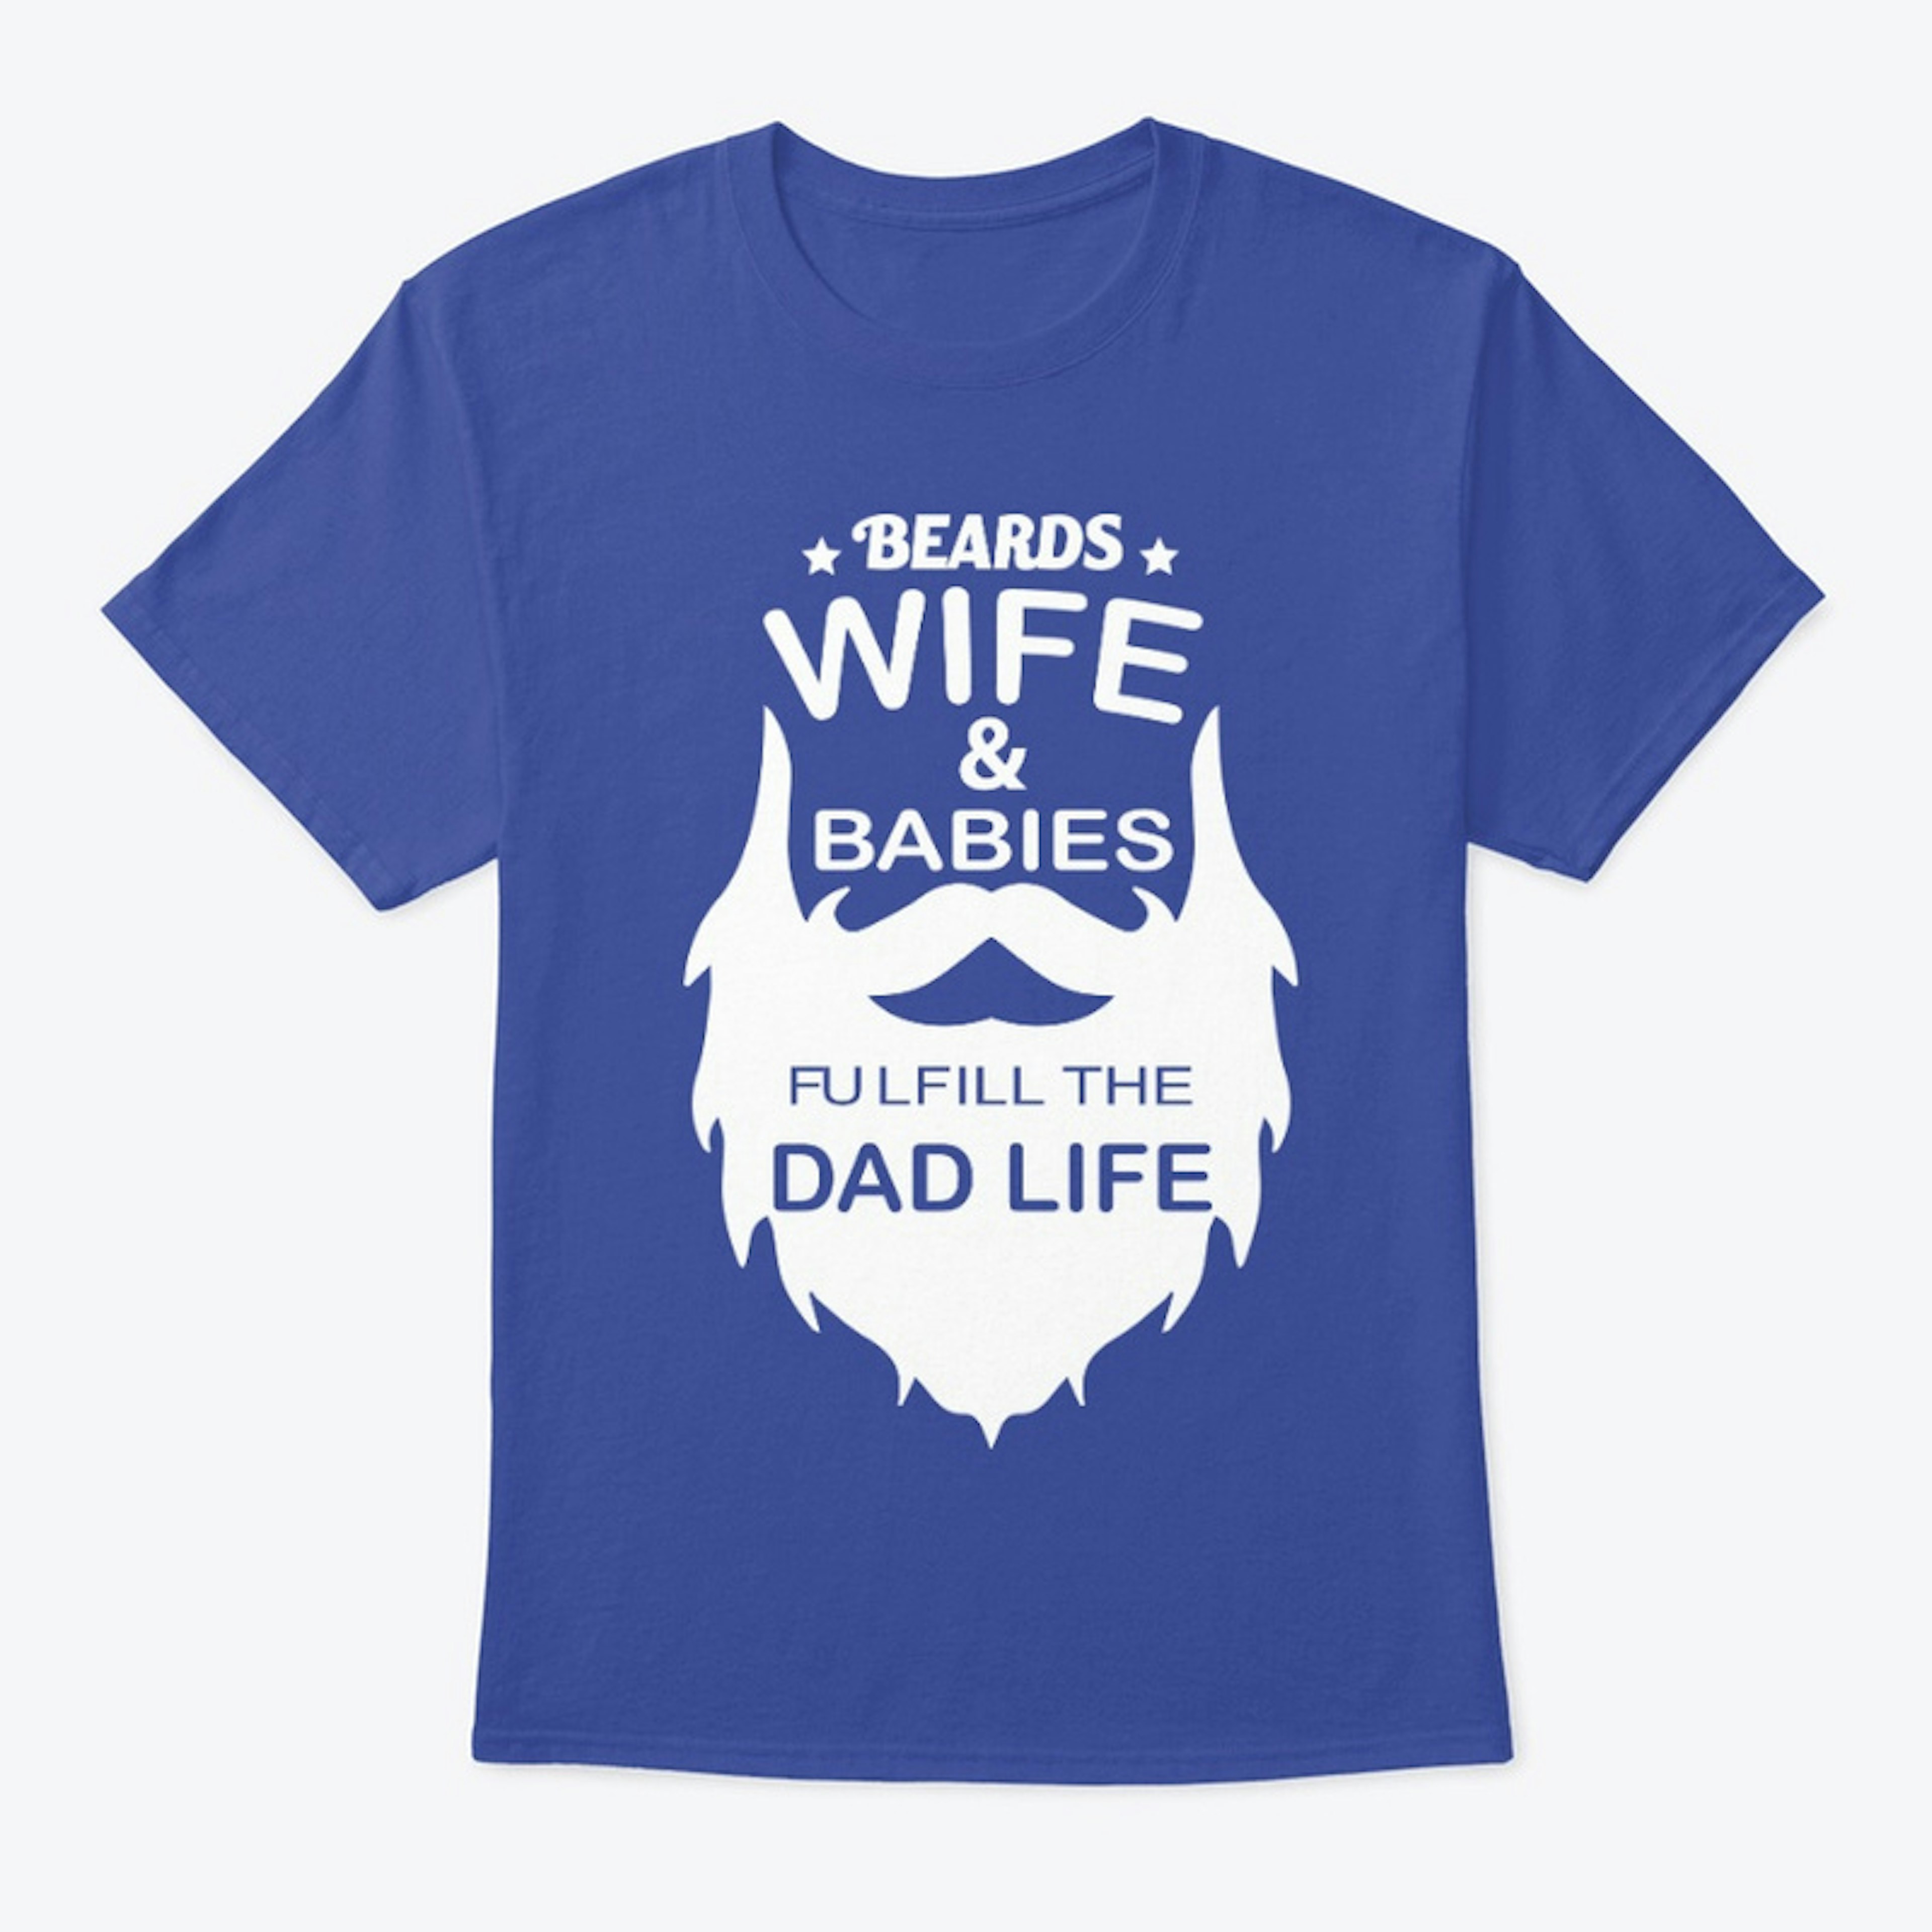 Beards-wife-babies-dad life tshirt